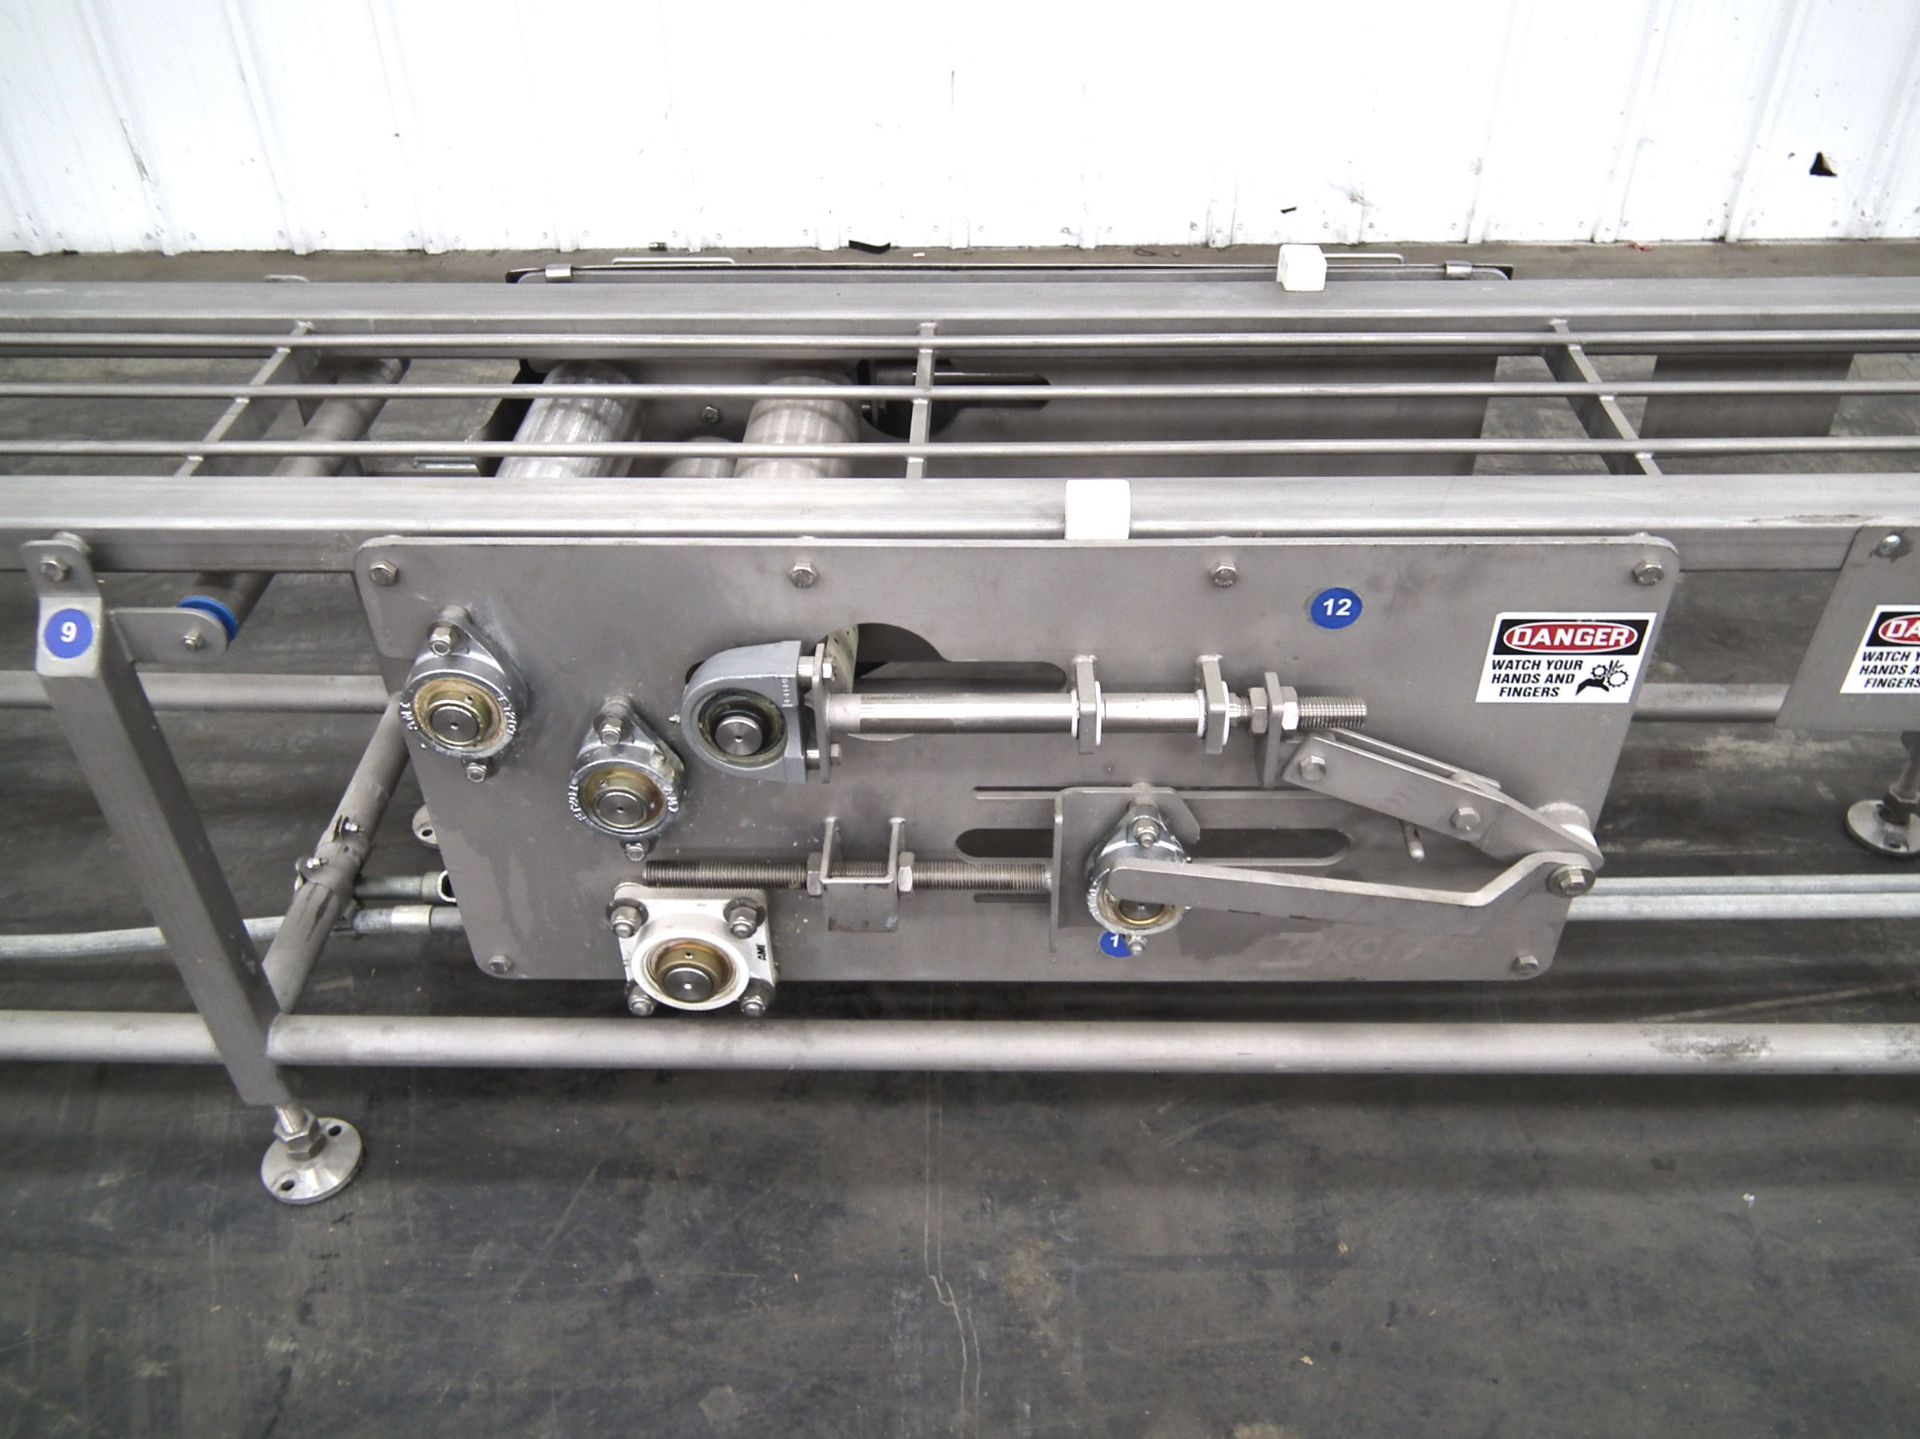 Kofab M25044 34 Foot Long Belt Conveyor - Image 4 of 14